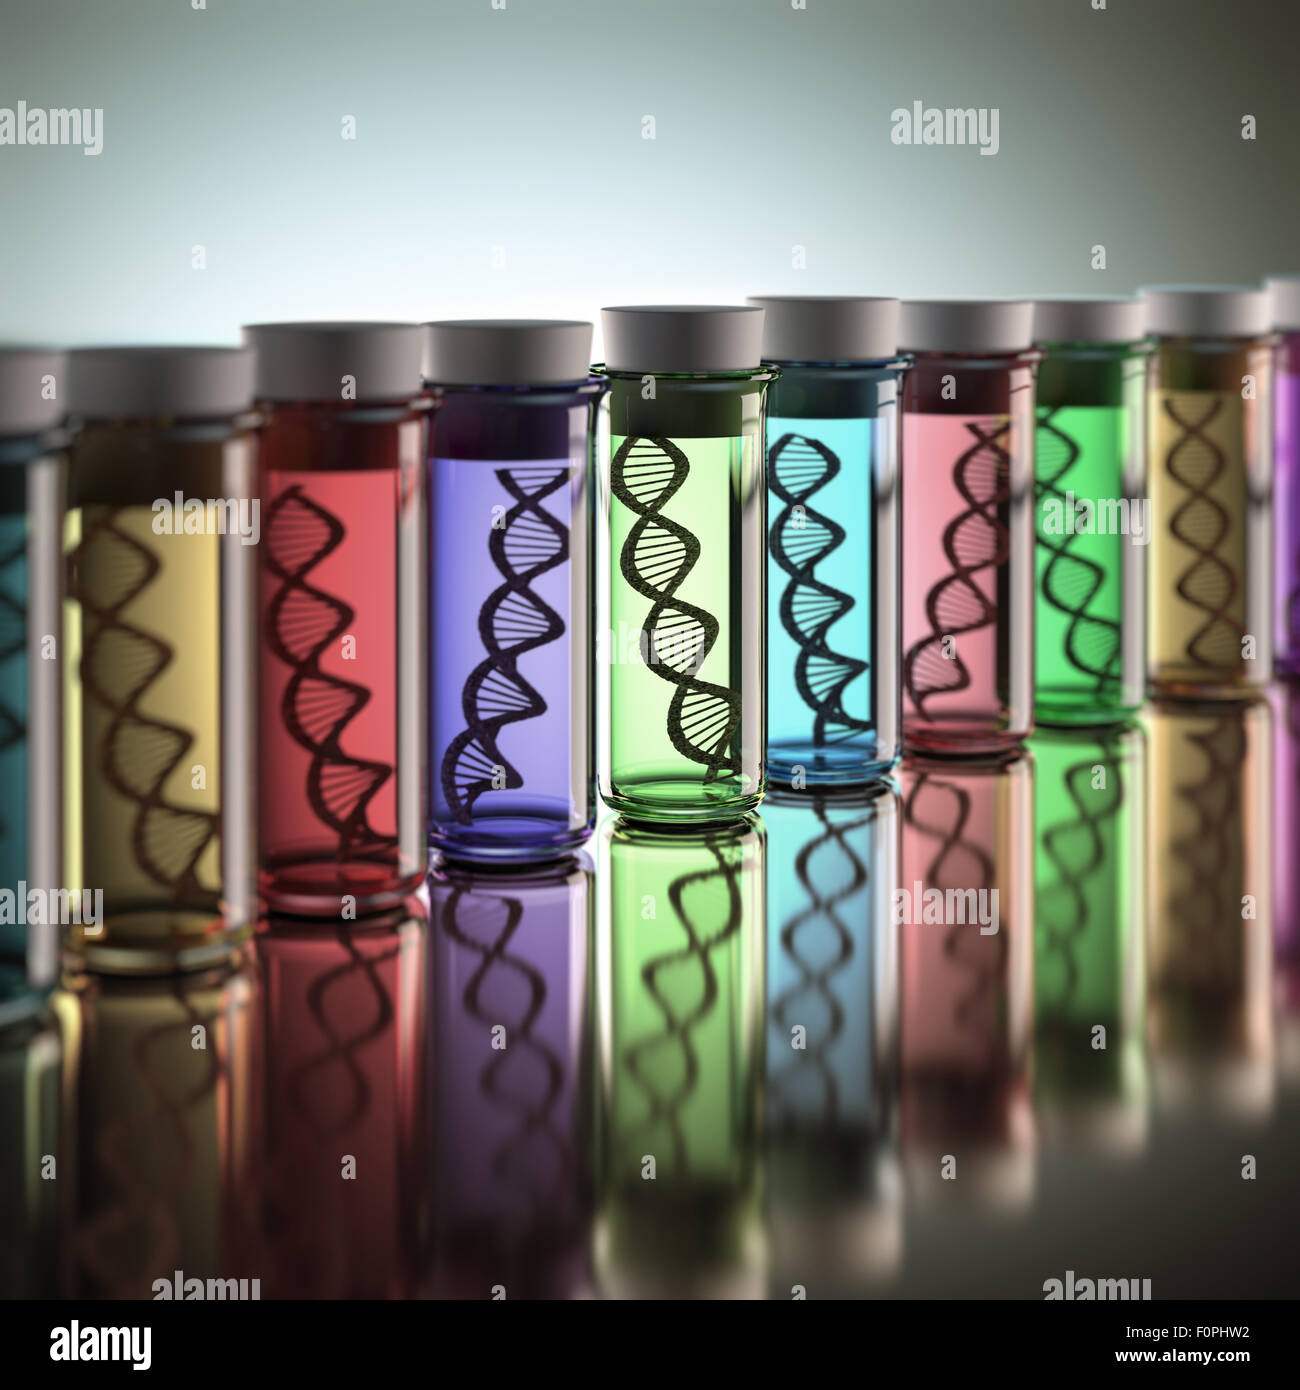 Tubes à essai de couleur avec les codes génétiques à l'intérieur. Notion de copie et modification génétique. Banque D'Images